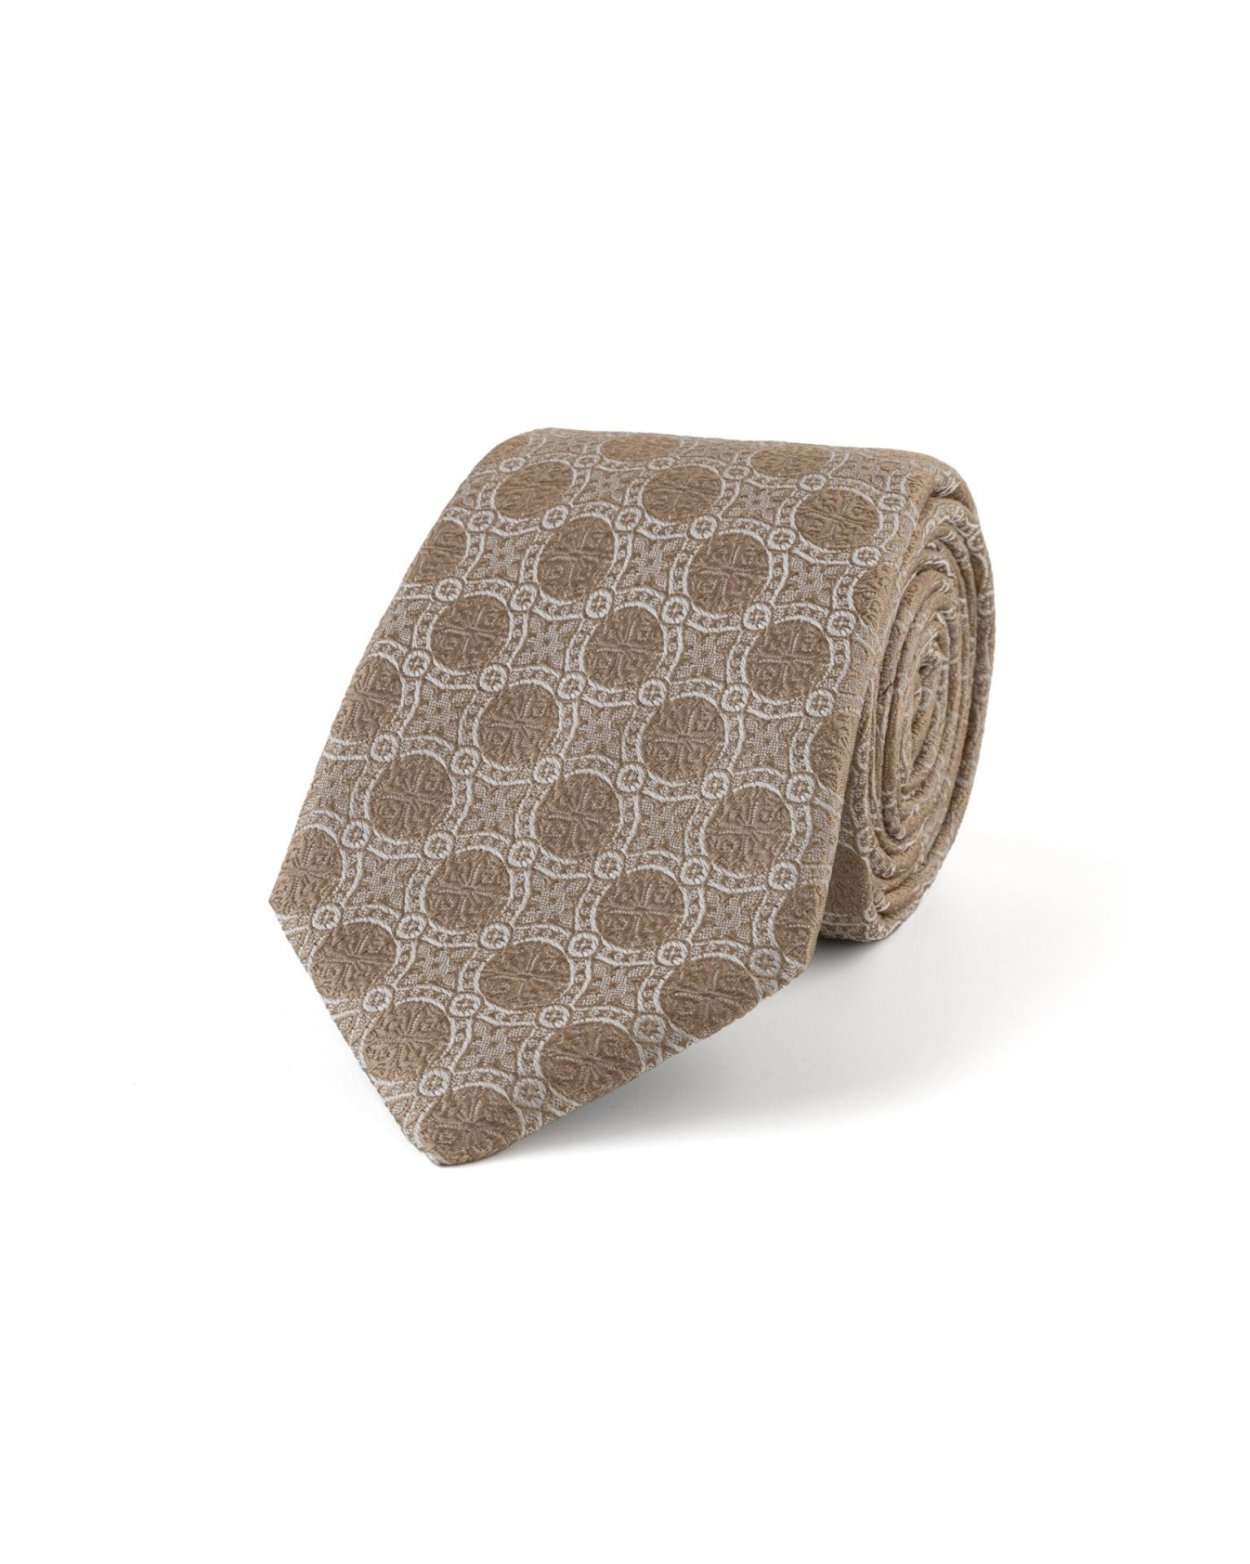 Šampaňská hedvábná kravata s jemným vzorem